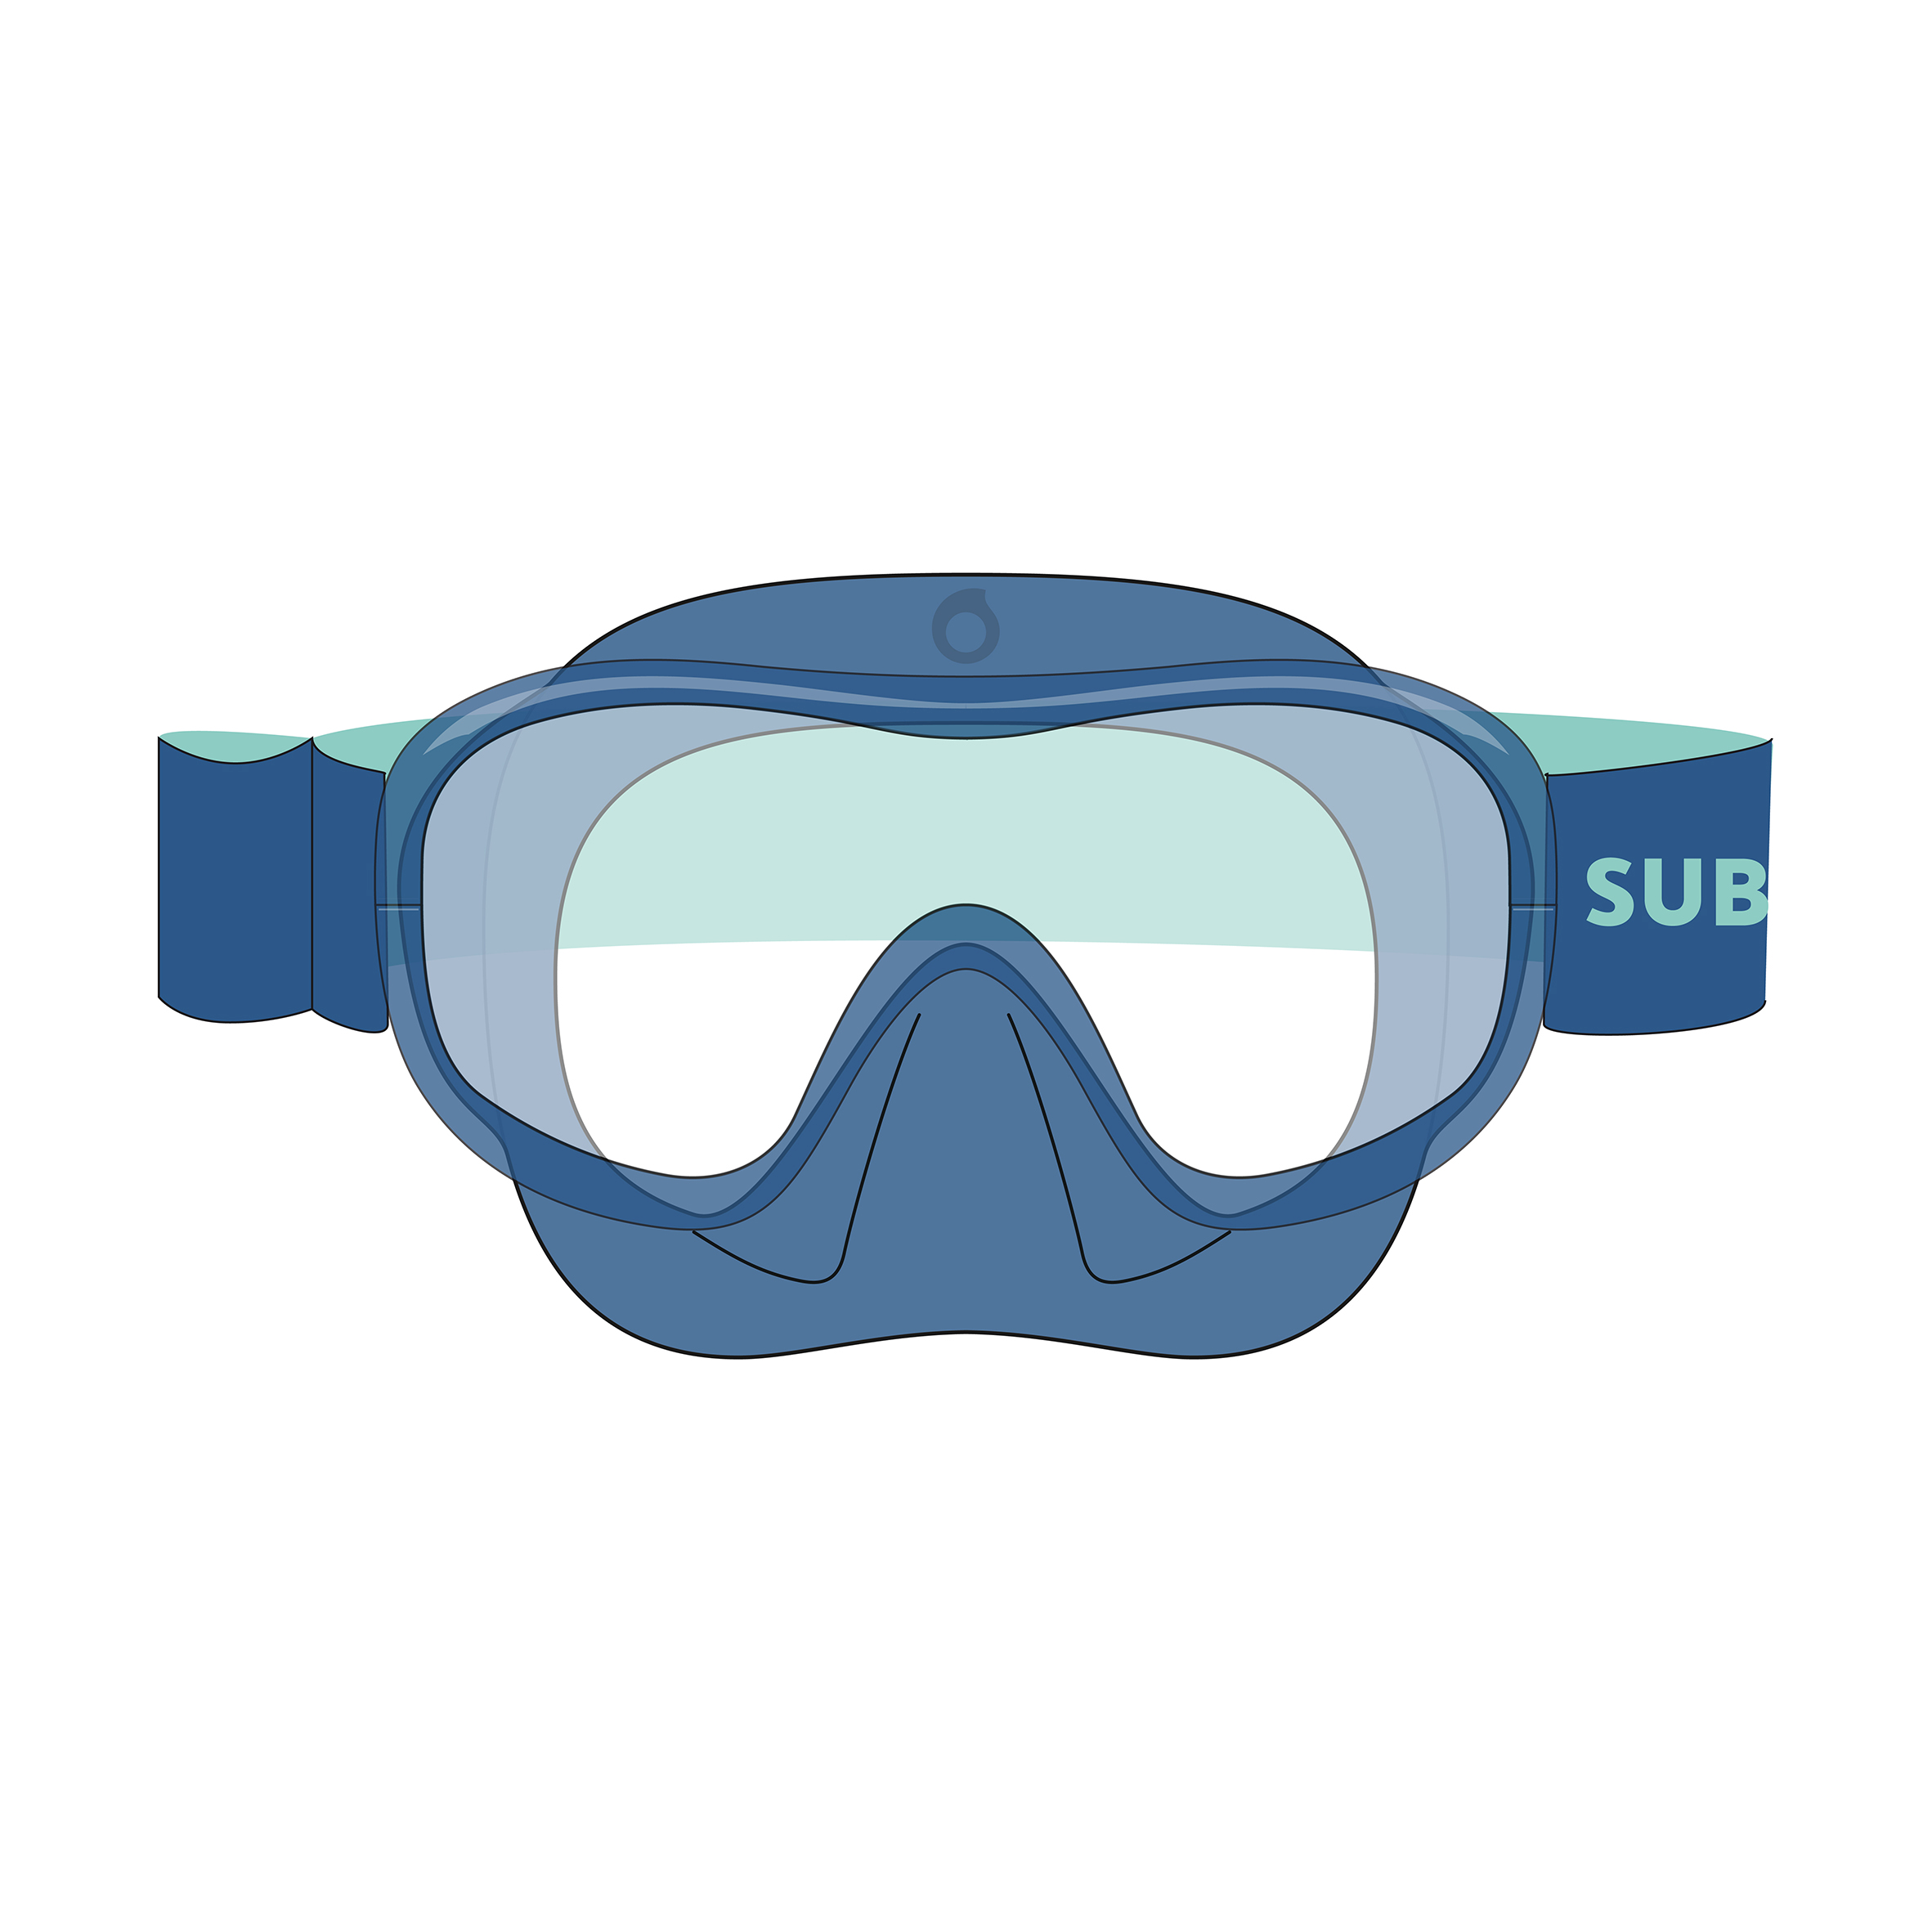 Masque plongée Enfant - 100 Confort Bleu pour les clubs et collectivités